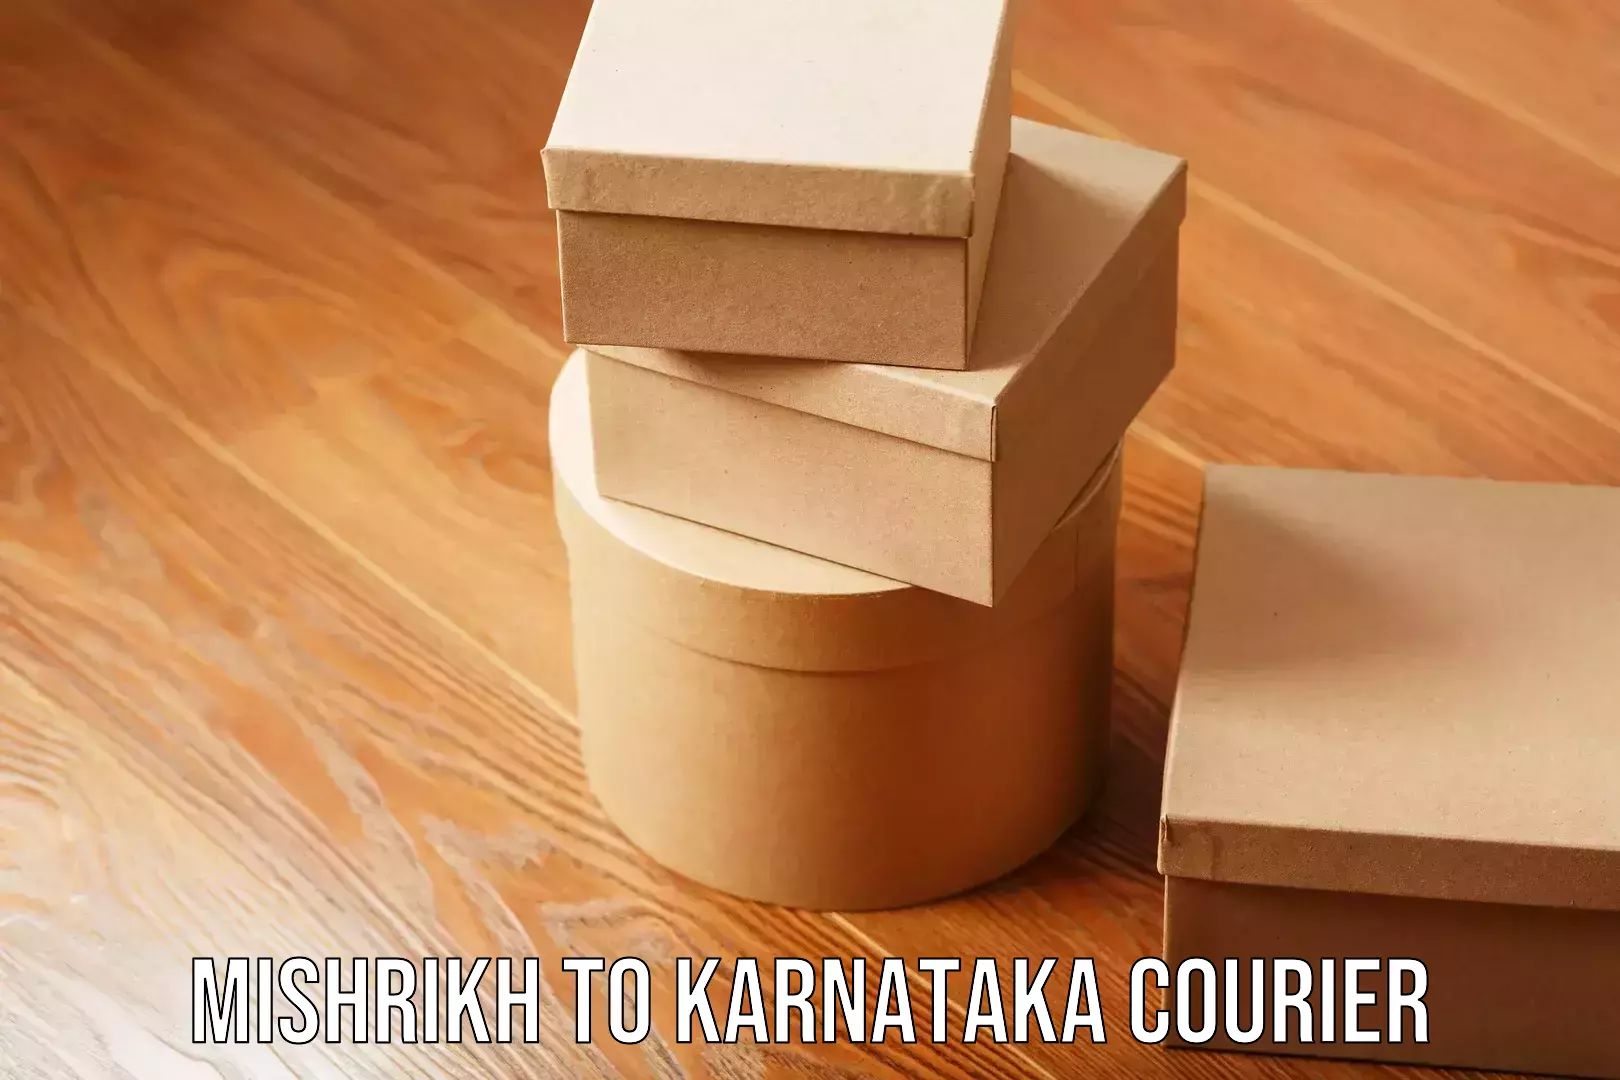 Quality moving company in Mishrikh to Karnataka